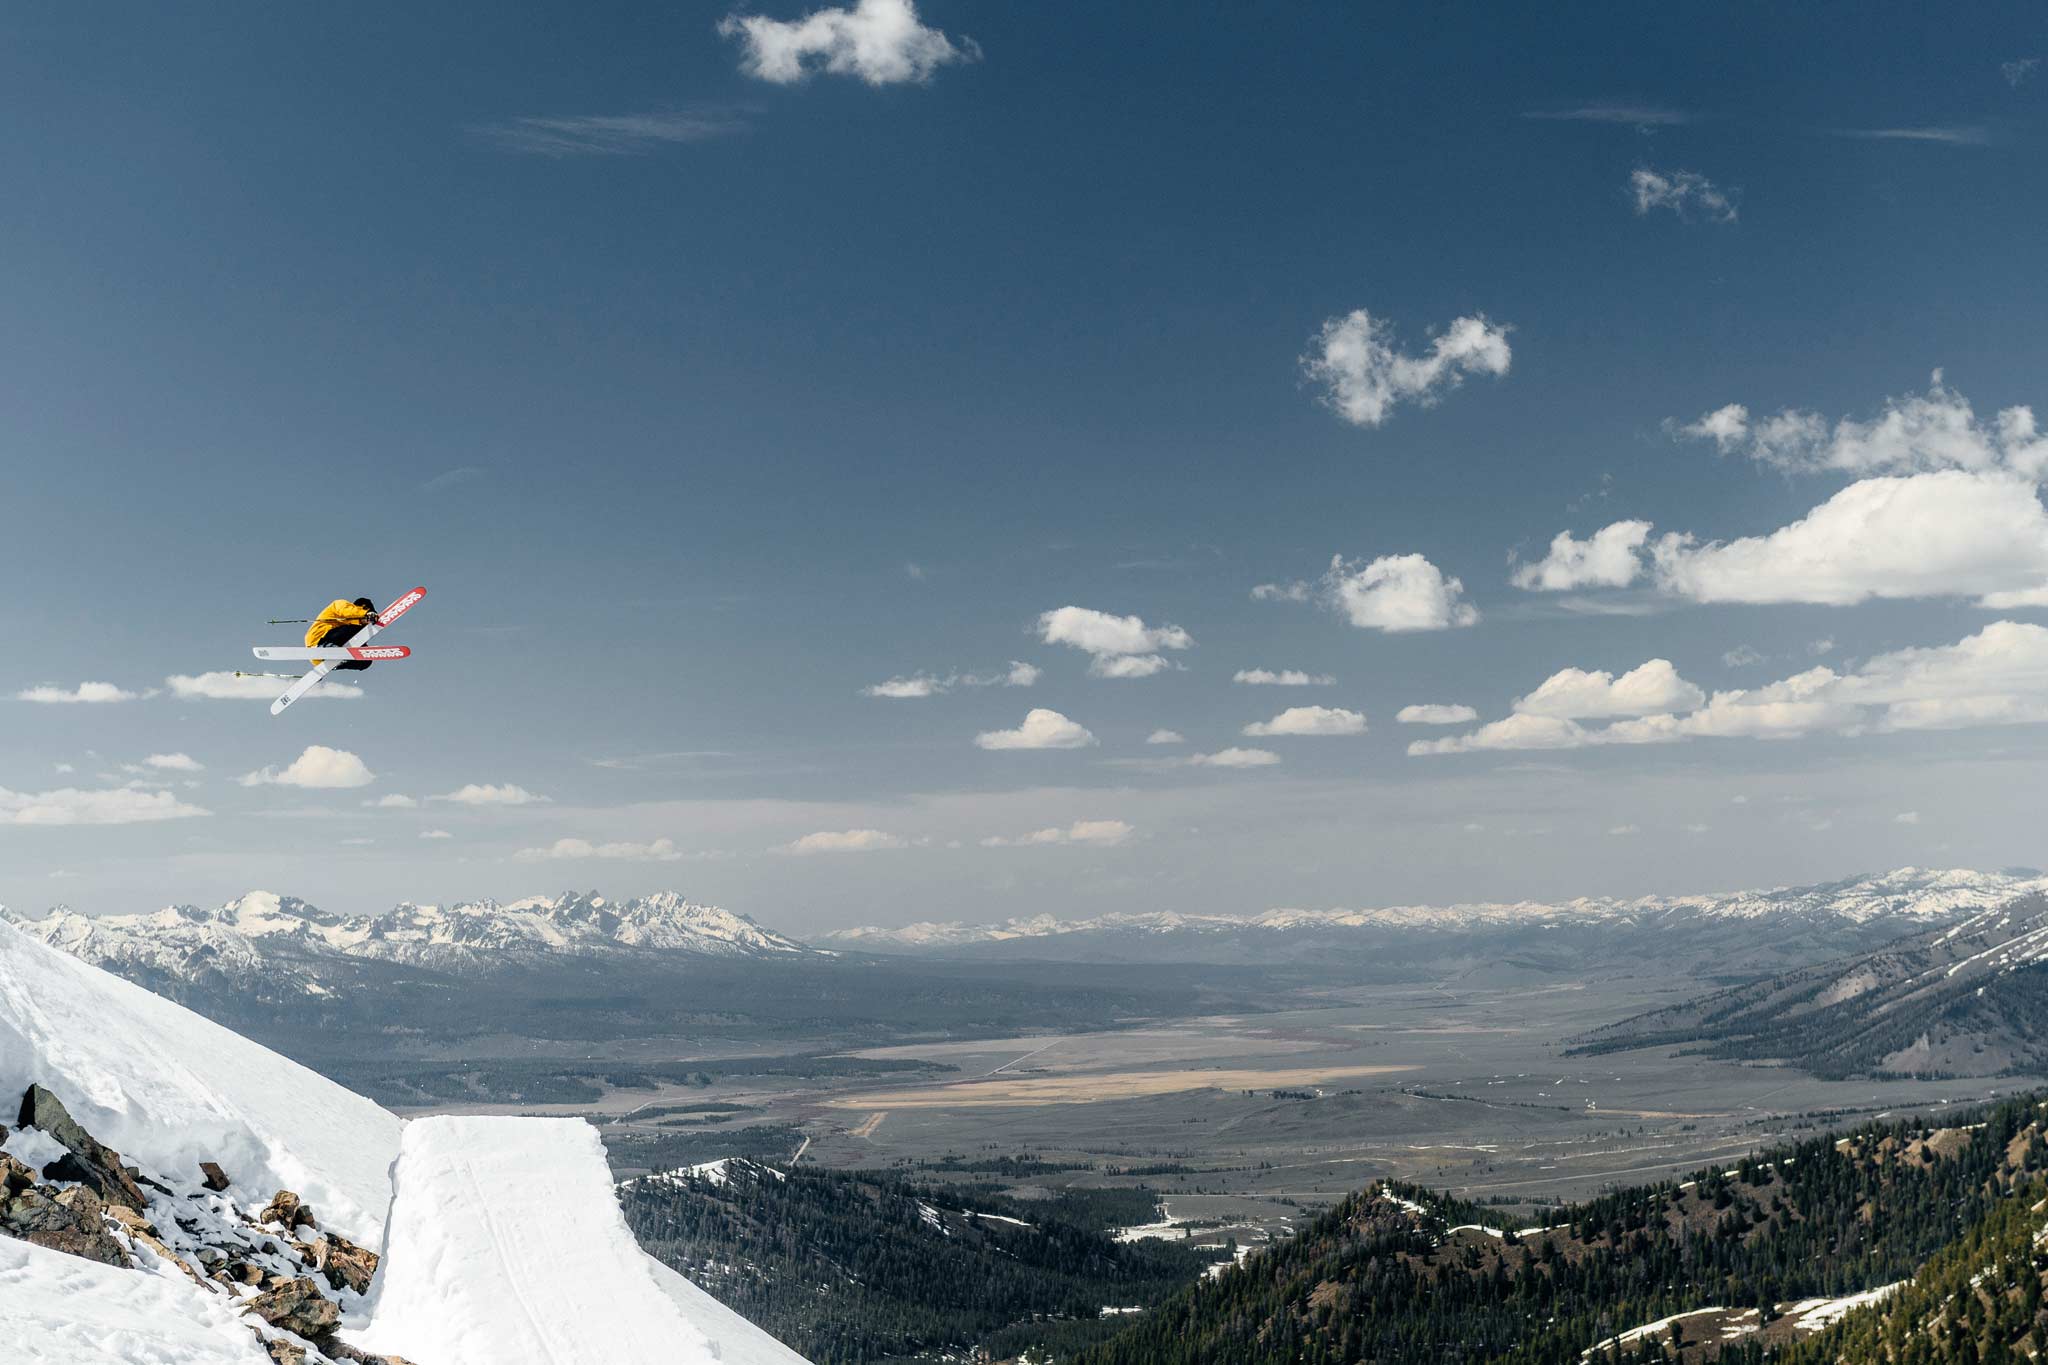 Zum Thema Helm beim Skifahren hat Crazy Karl seine eigene Einstellung, die wahrscheinlich nicht alle verstehen können. - Foto: Tal Roberts